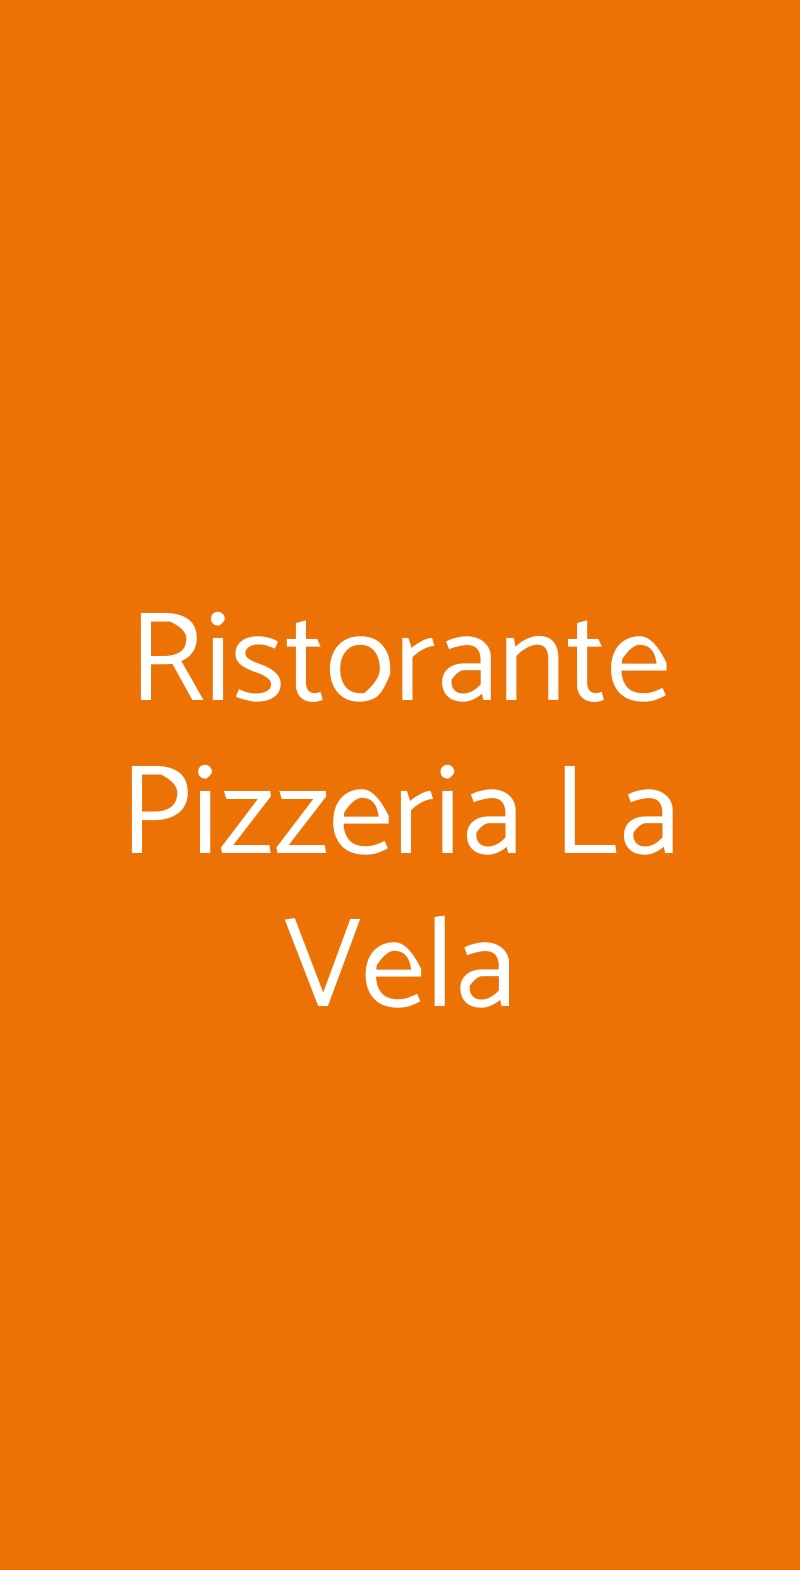 Ristorante Pizzeria La Vela Bologna menù 1 pagina